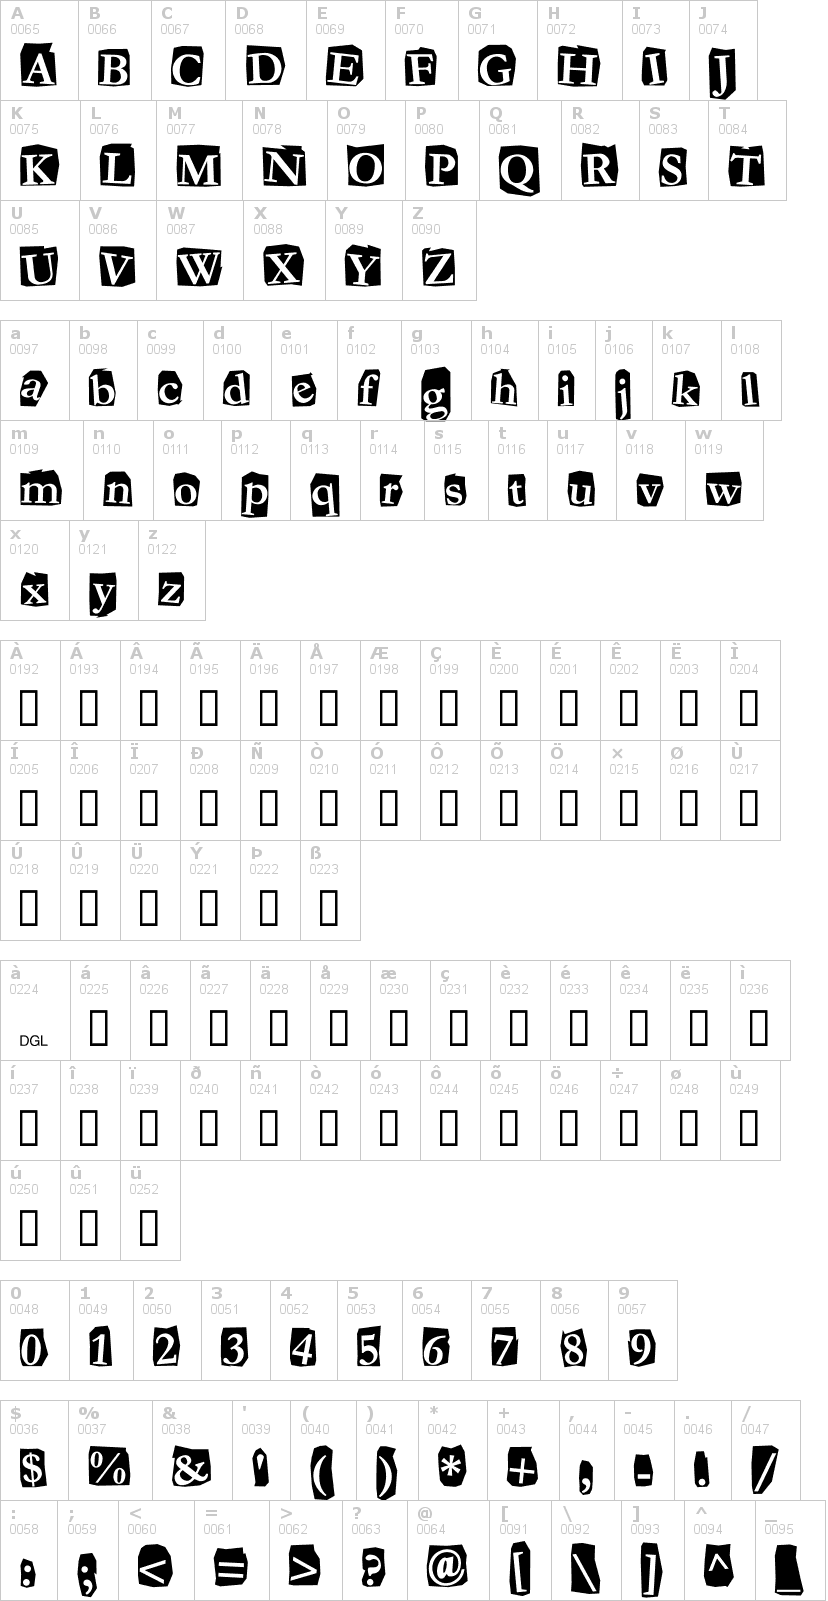 Lettere dell'alfabeto del font fanzine con le quali è possibile realizzare adesivi prespaziati